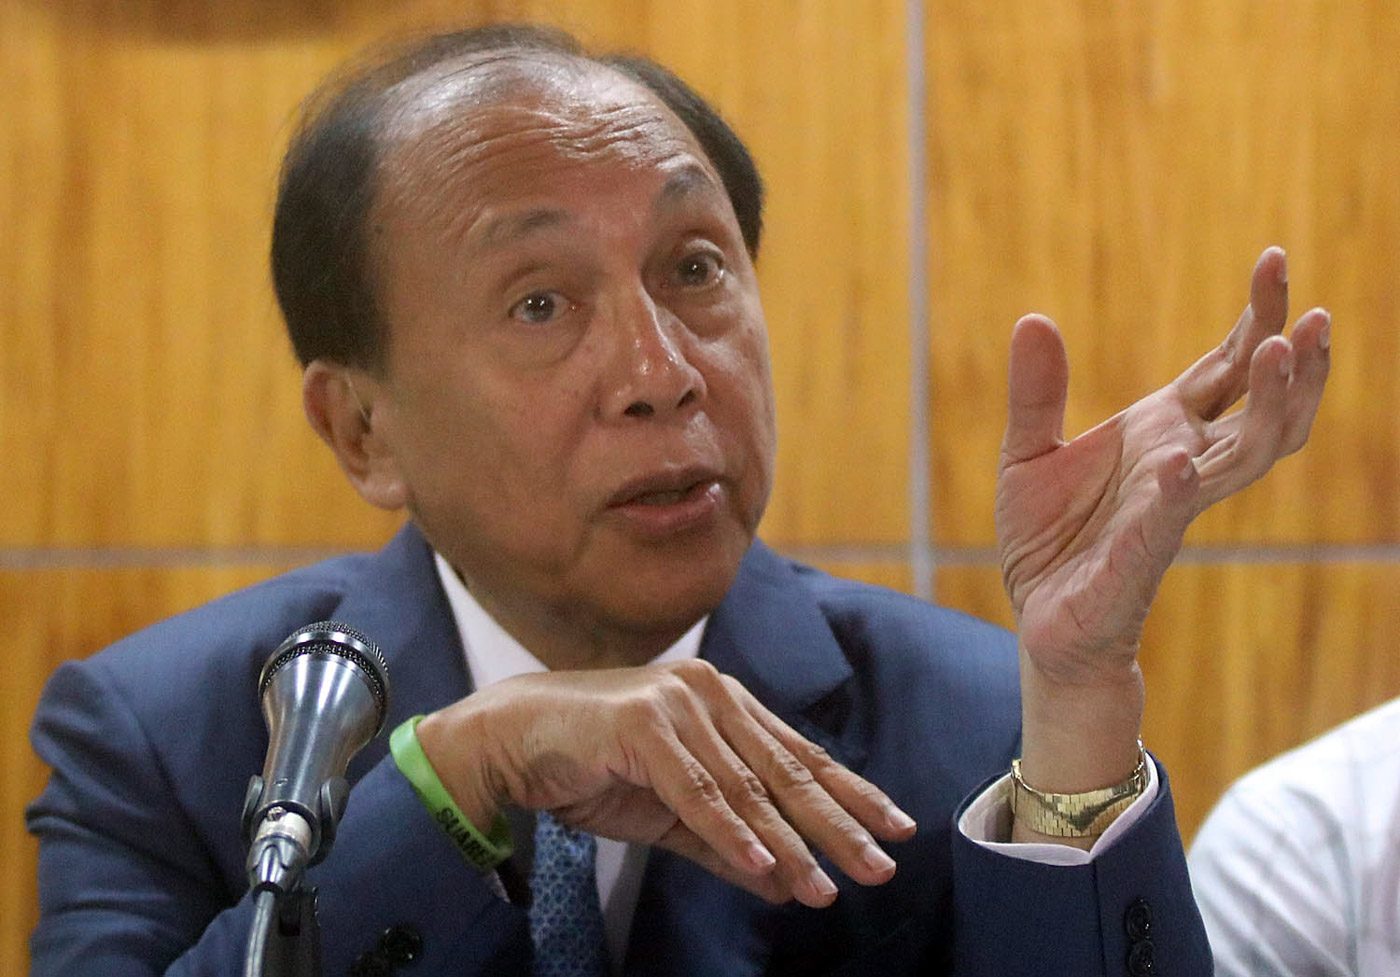 Fariñas bloc takes Suarez minority leadership row to SC